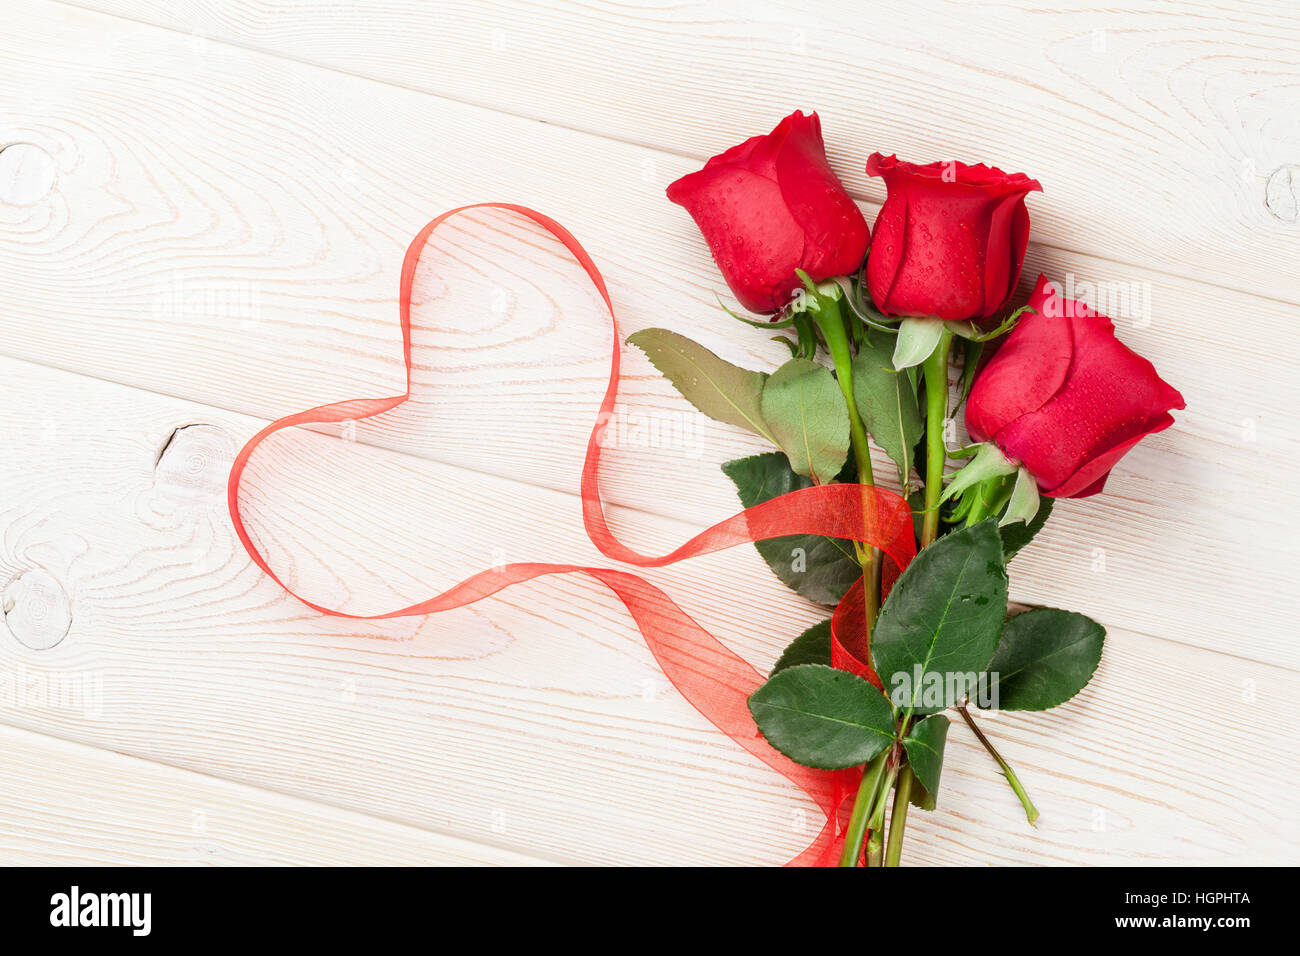 Forma de corazón hecha con pétalos de rosas rojas naturales